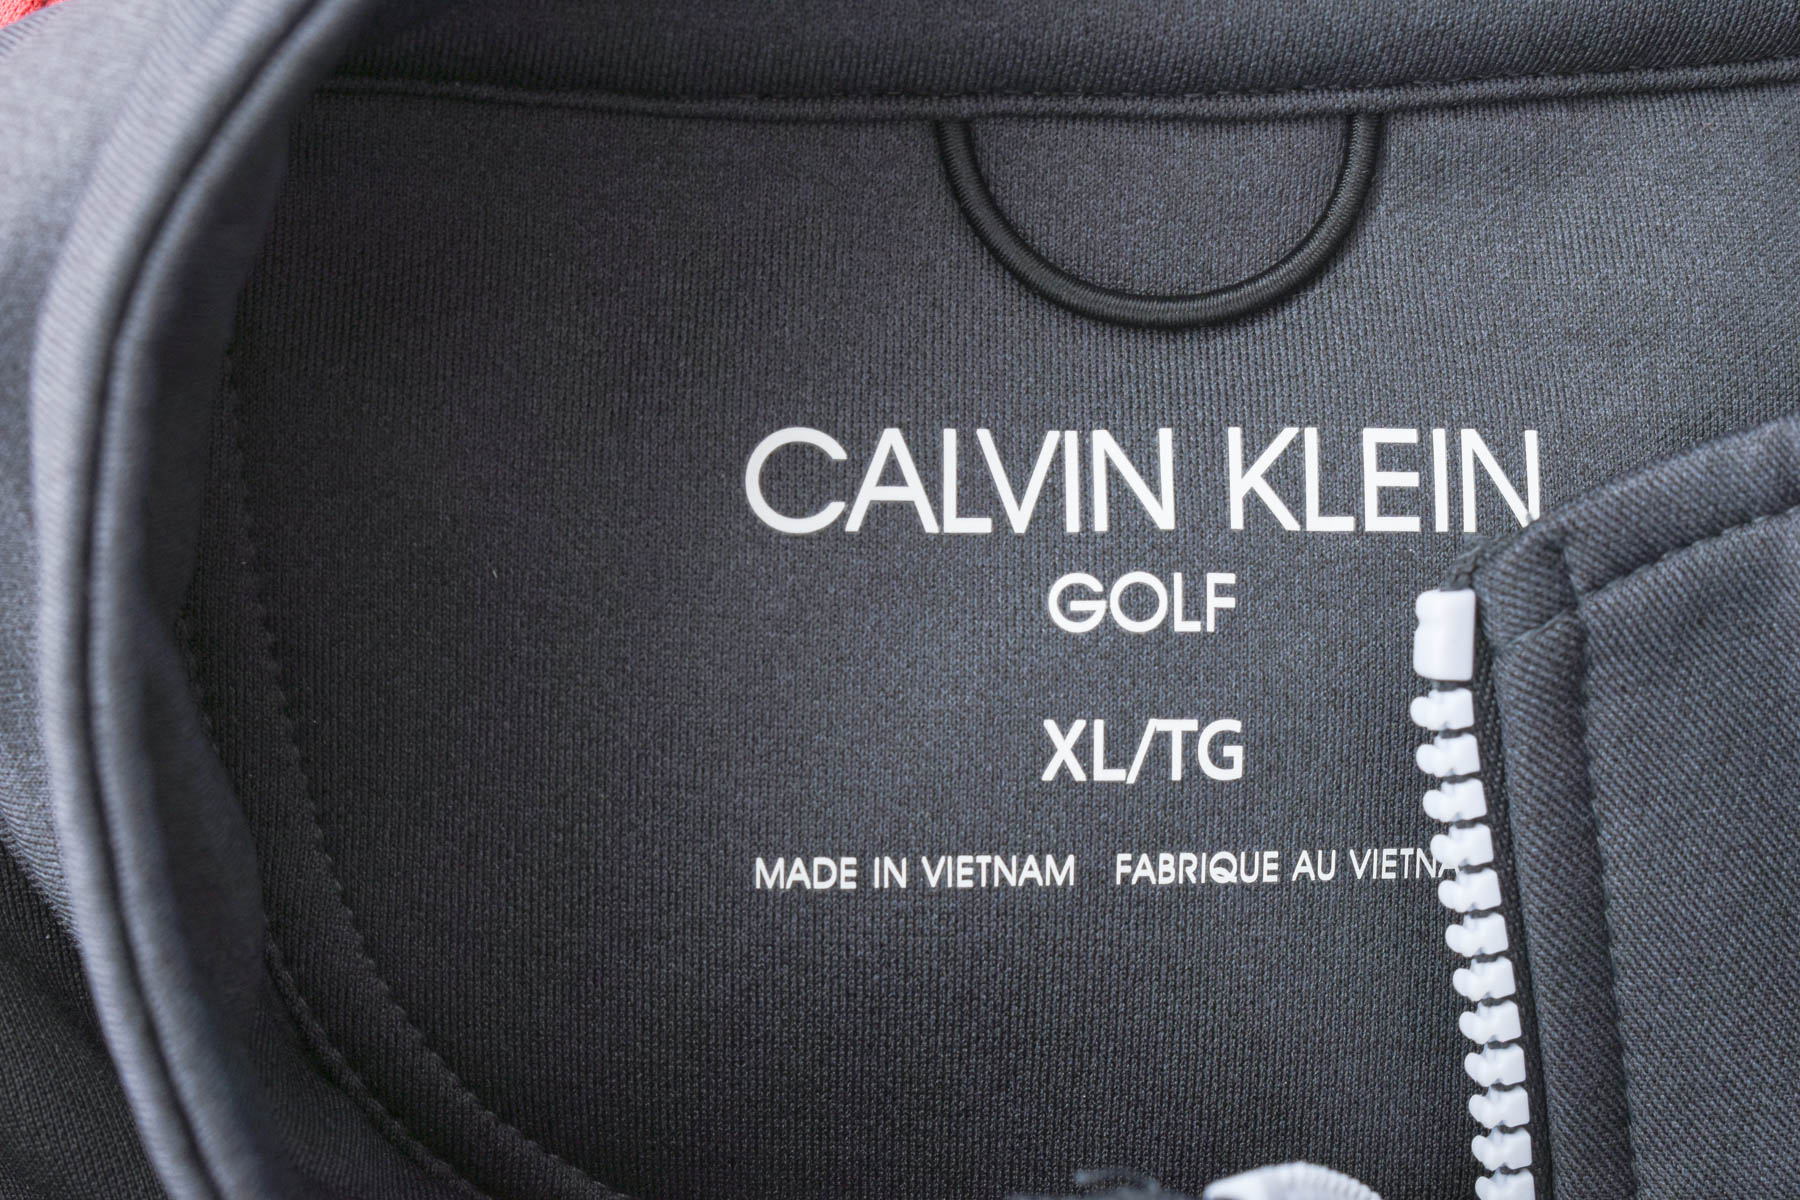 Ανδρική μπλούζα - Calvin Klein Golf - 2